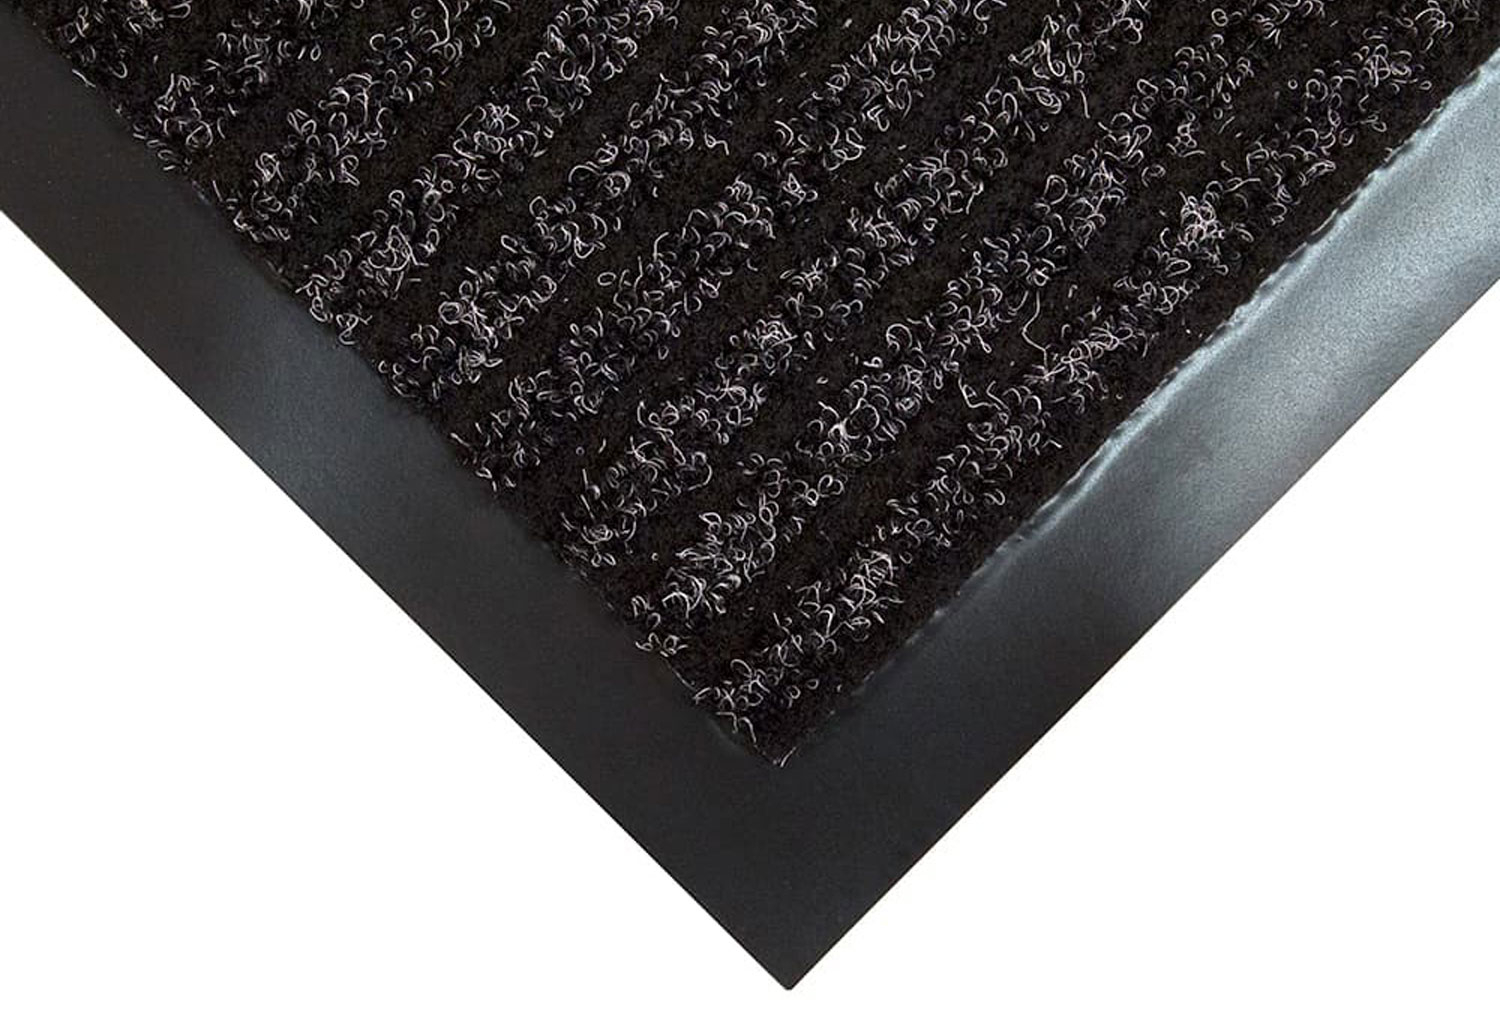 Toughrib Heavy Duty Doormat (Charcoal), 90wx150d (cm)